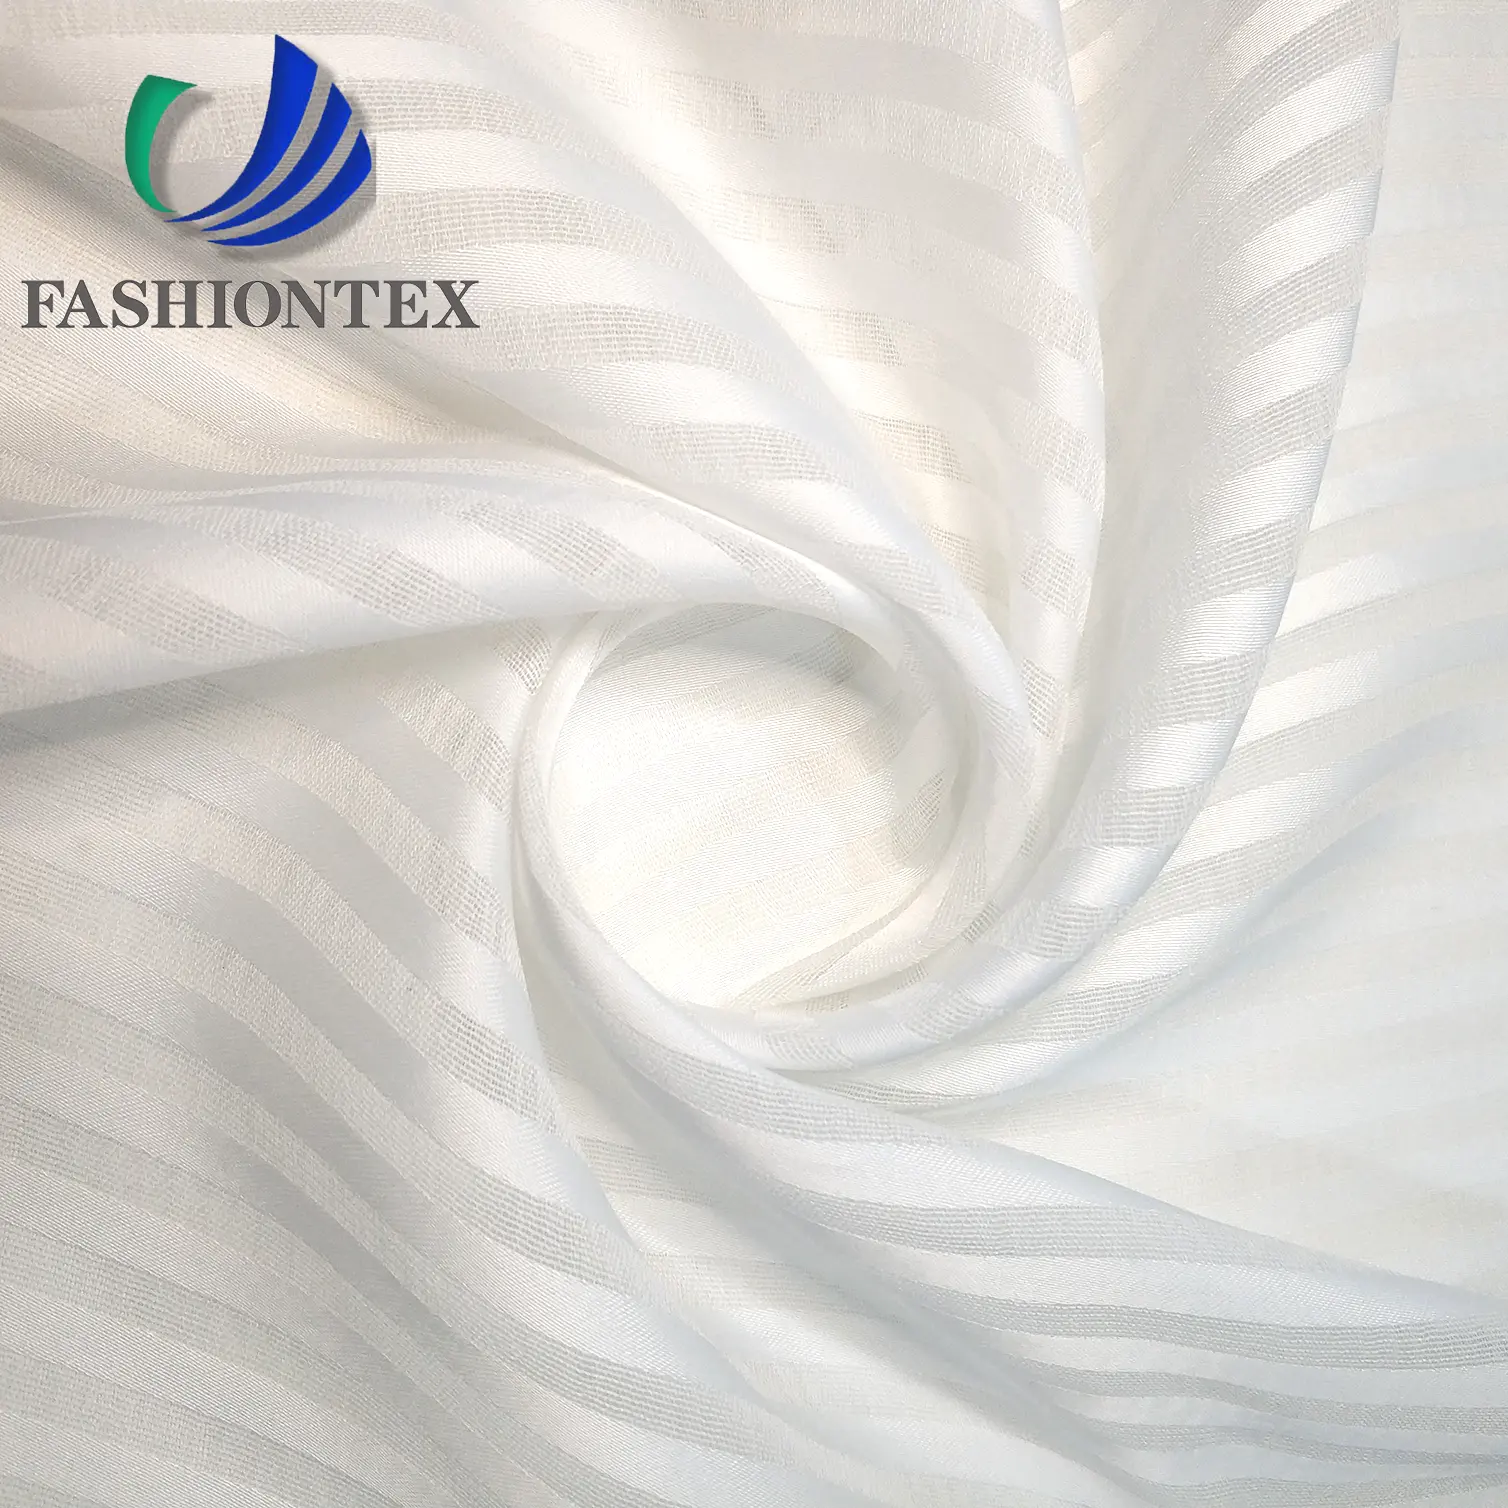 Fashiontex – tissu jacquard en mousseline de soie à rayures de satin 75D, Support personnalisé, 100% polyester tissé, échantillons gratuits